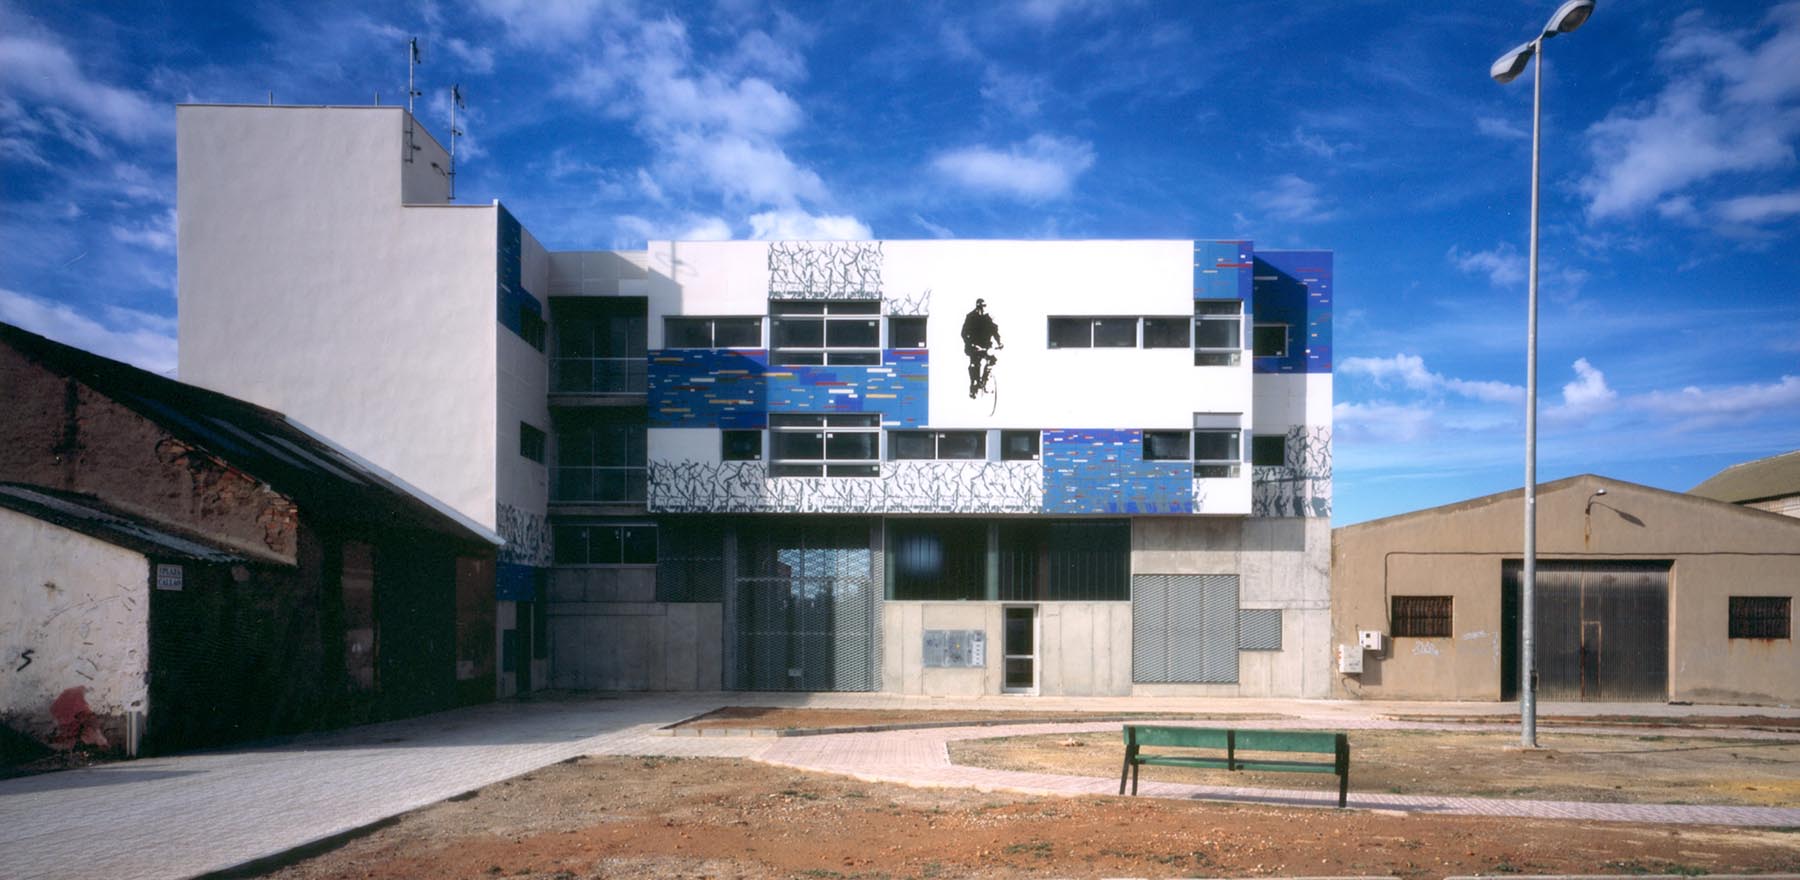 8 Public Housing Development in ‘Callao Square’. La Unión. Murcia